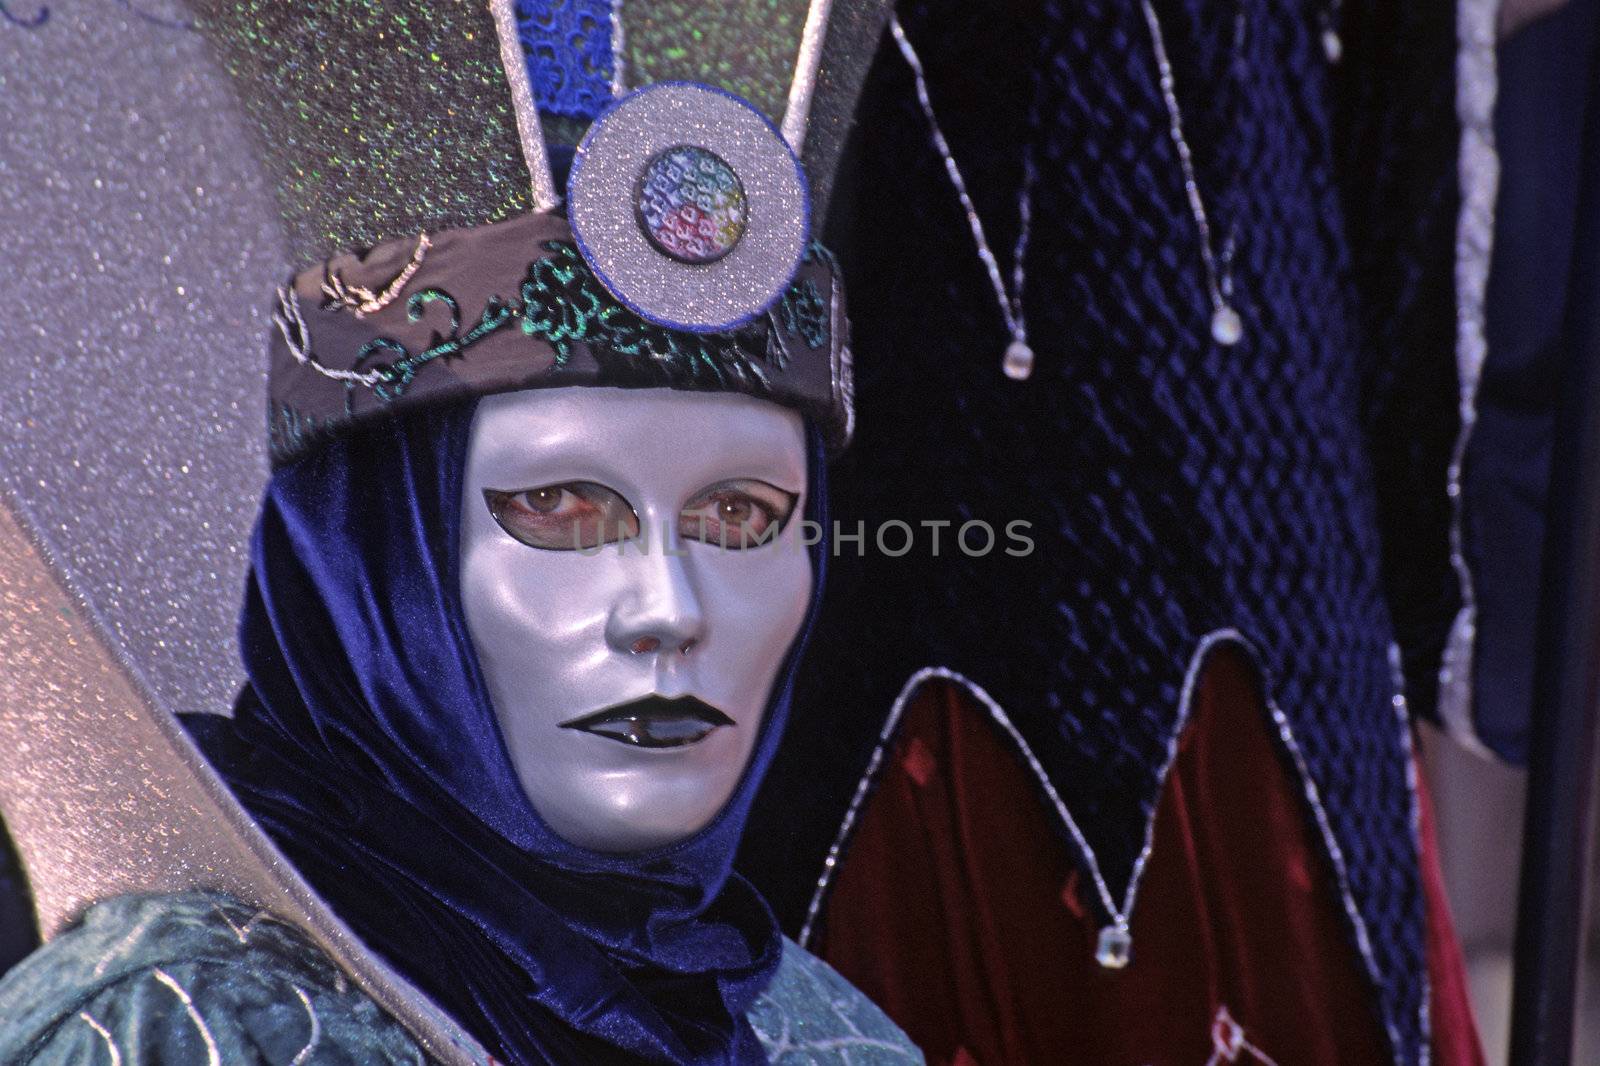 Carnival in Venice, Mask 142
Karneval in Venedig, Maske 142